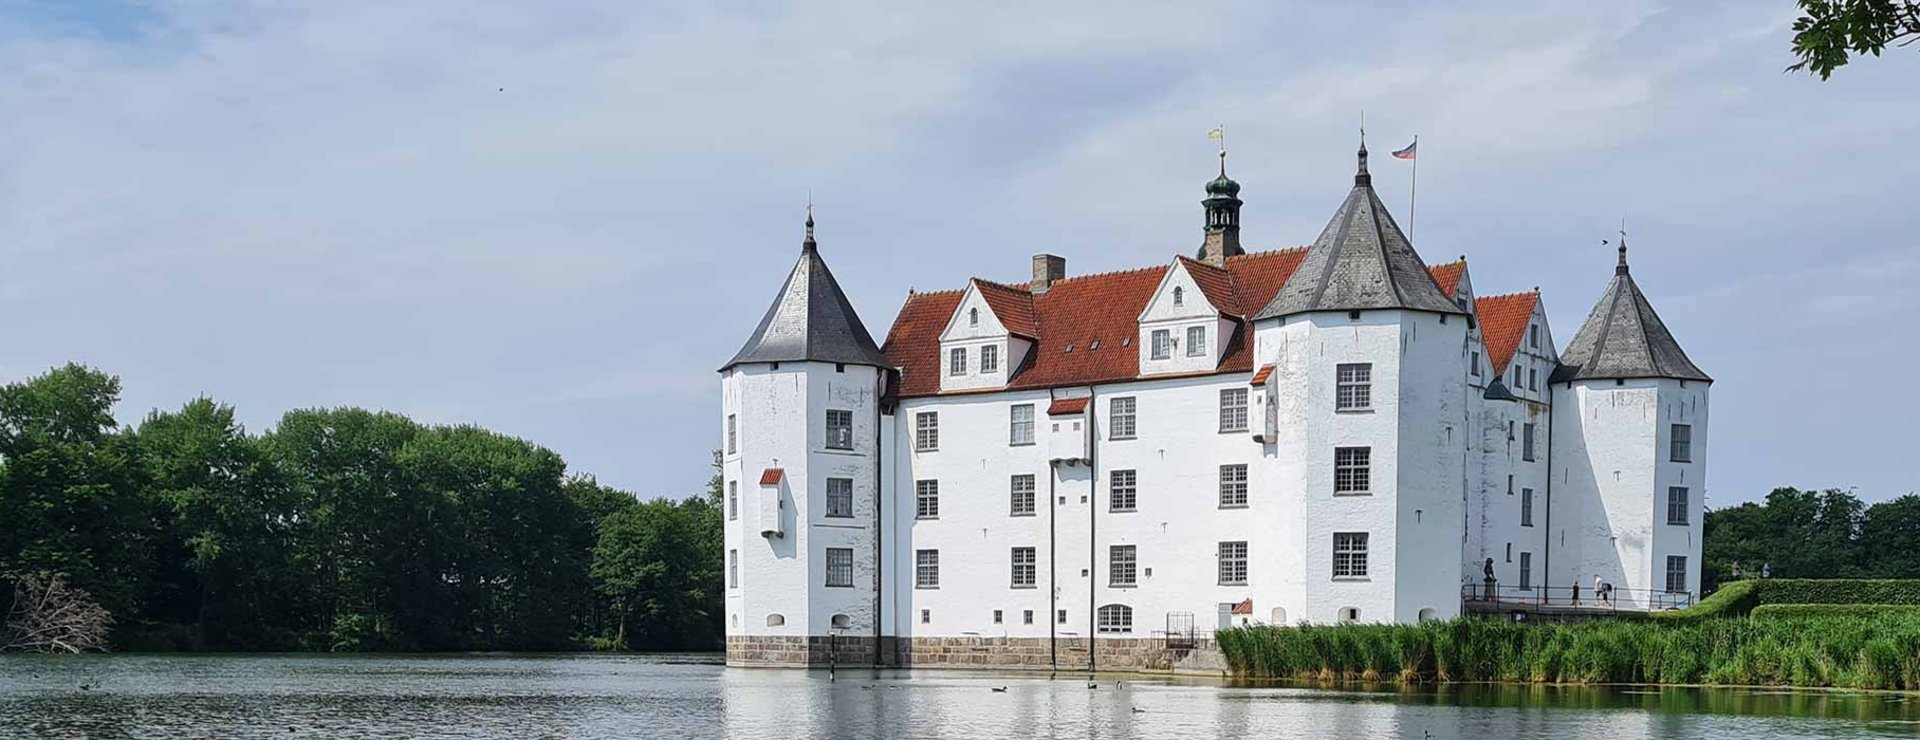 Schloss Glücksburg vom Wasser aus